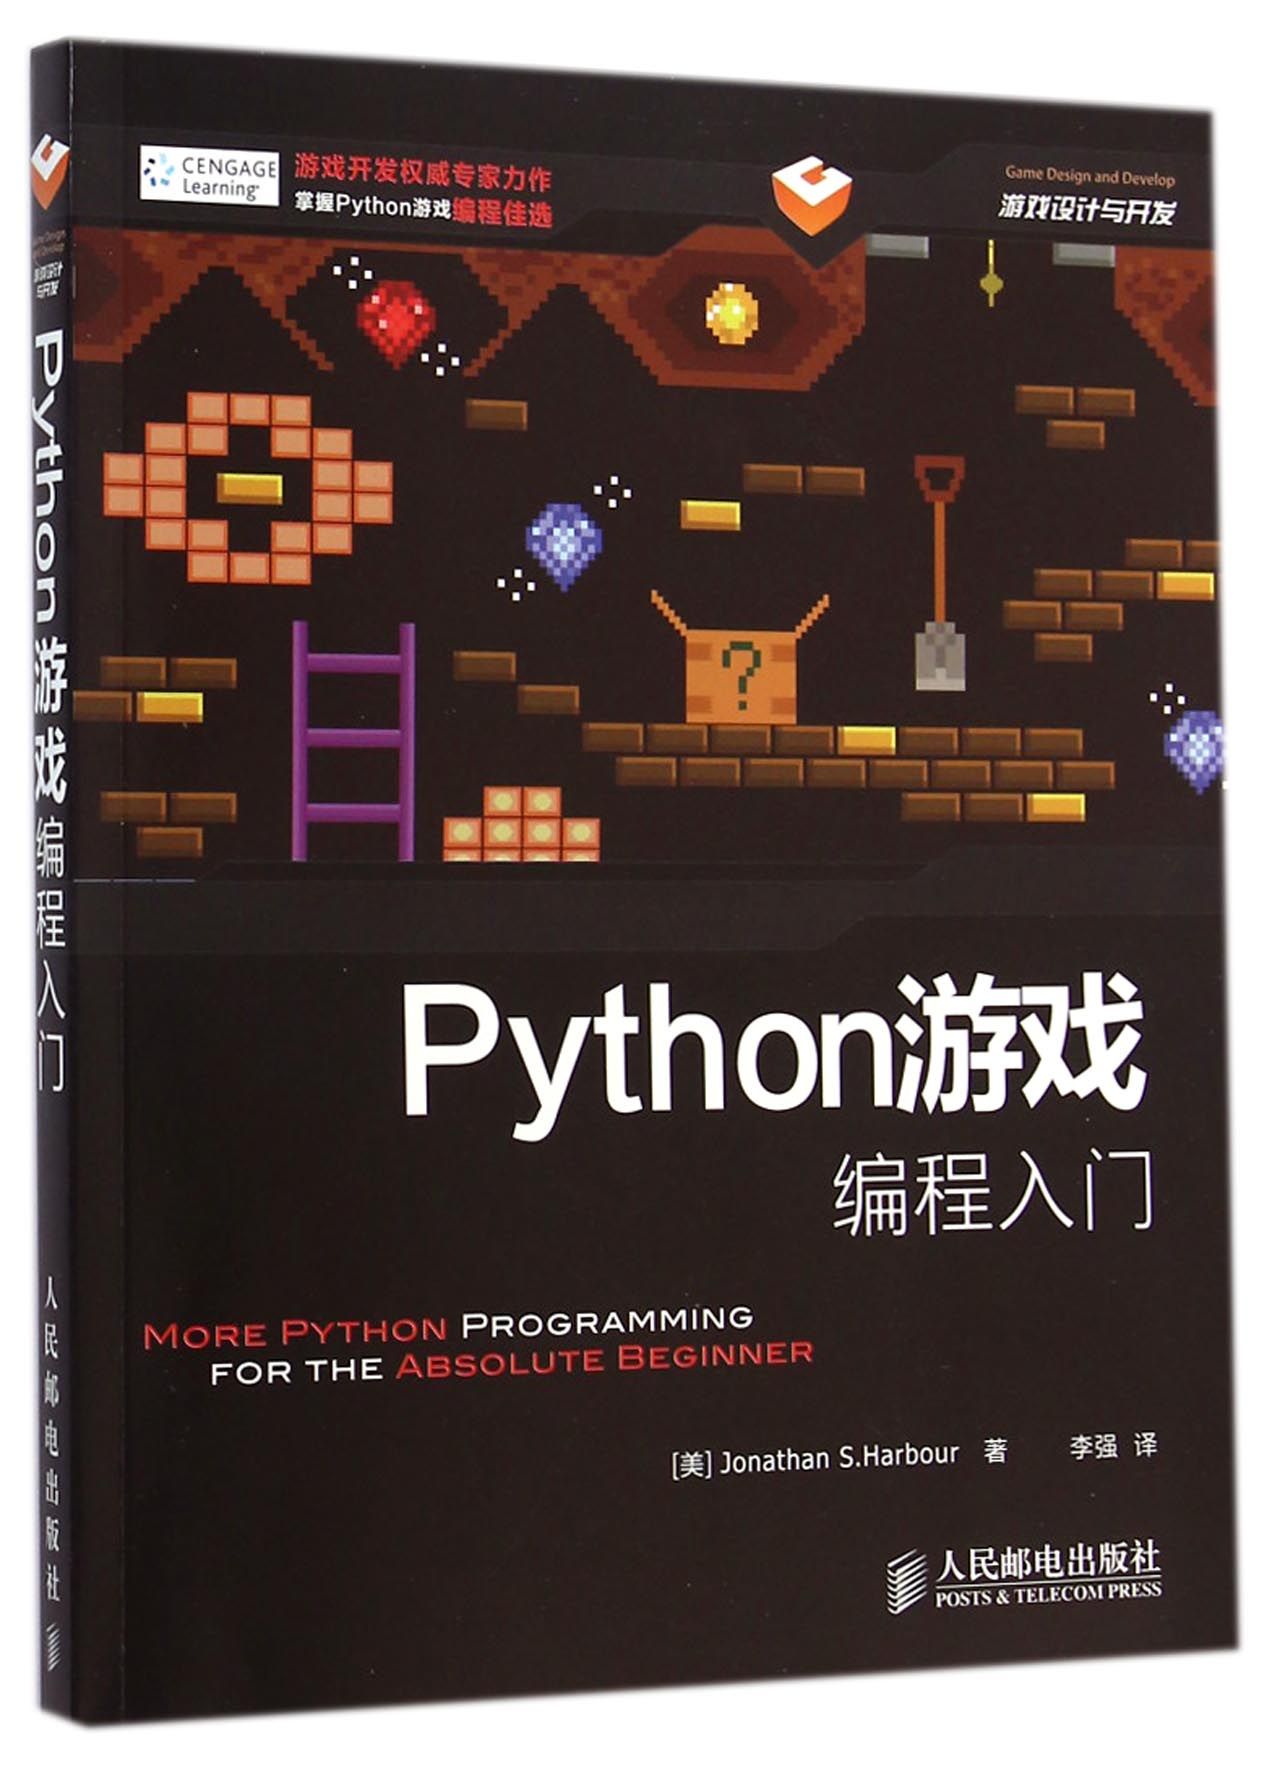 Python游戏编程入门(游戏设计与开发)